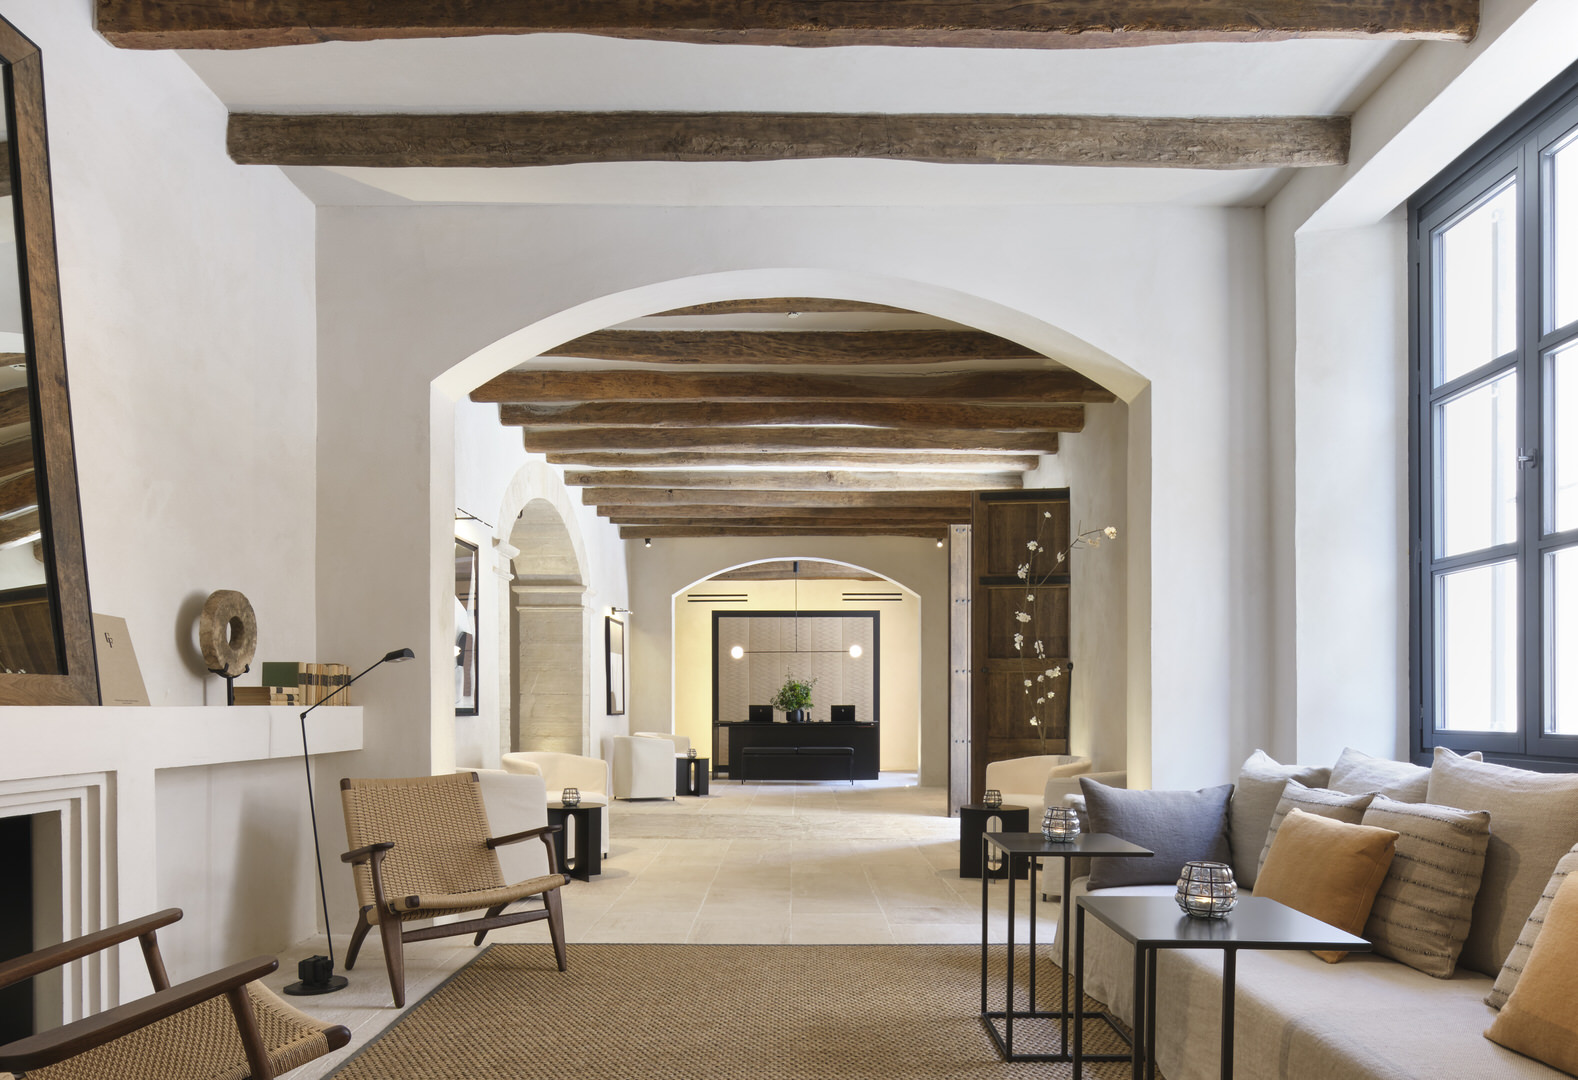 Can Ferrerata - a perfect luxury hotel in Mallorca. Photo by: Arturo+Lauren